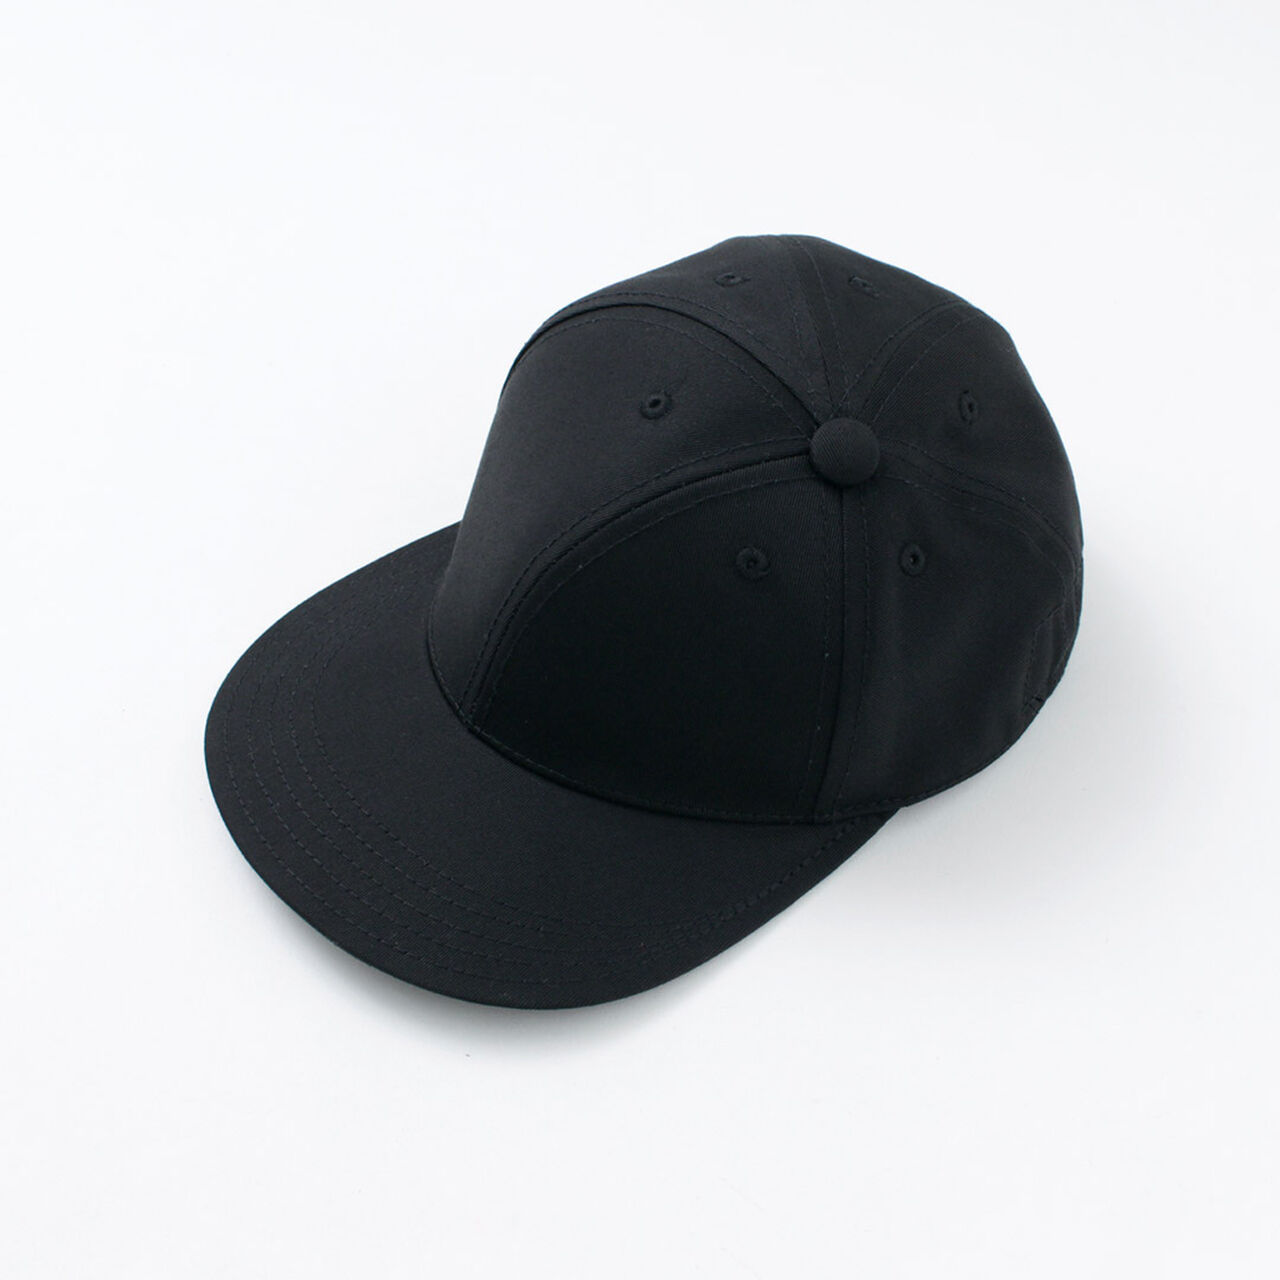 Baseball Cap Twisty,Black, large image number 0